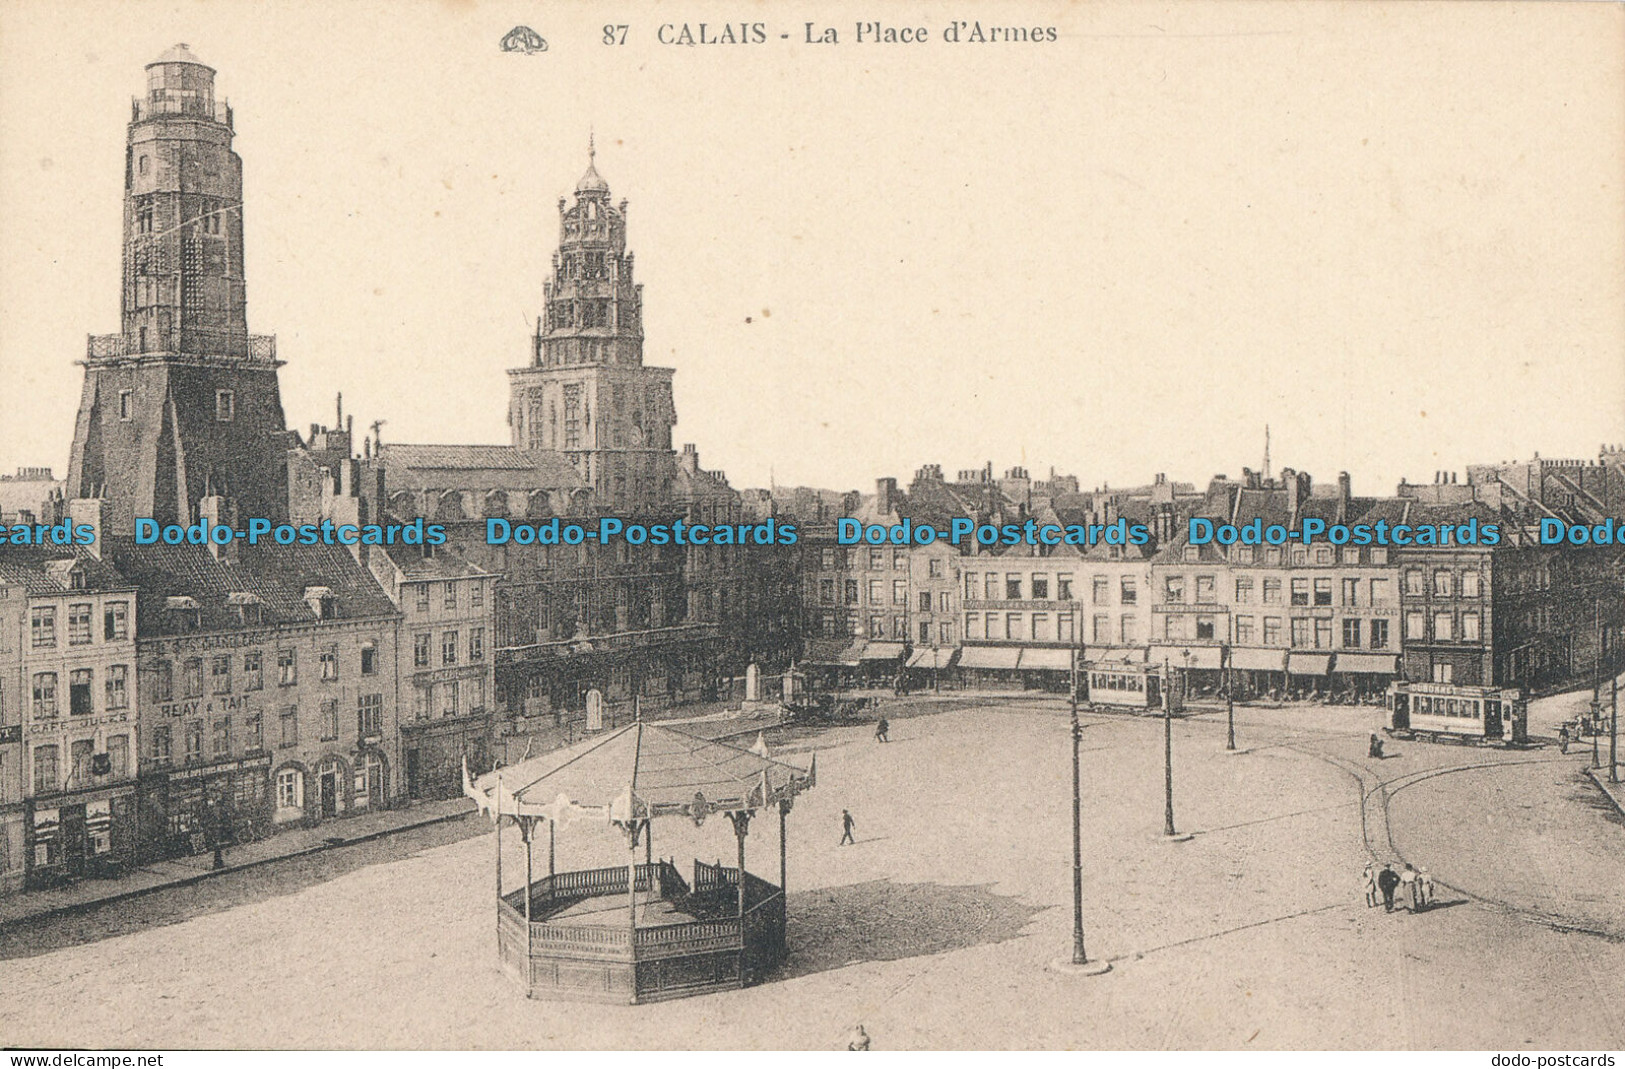 R001255 Calais. La Place D Armes. Photomecaniques. No 87 - Monde